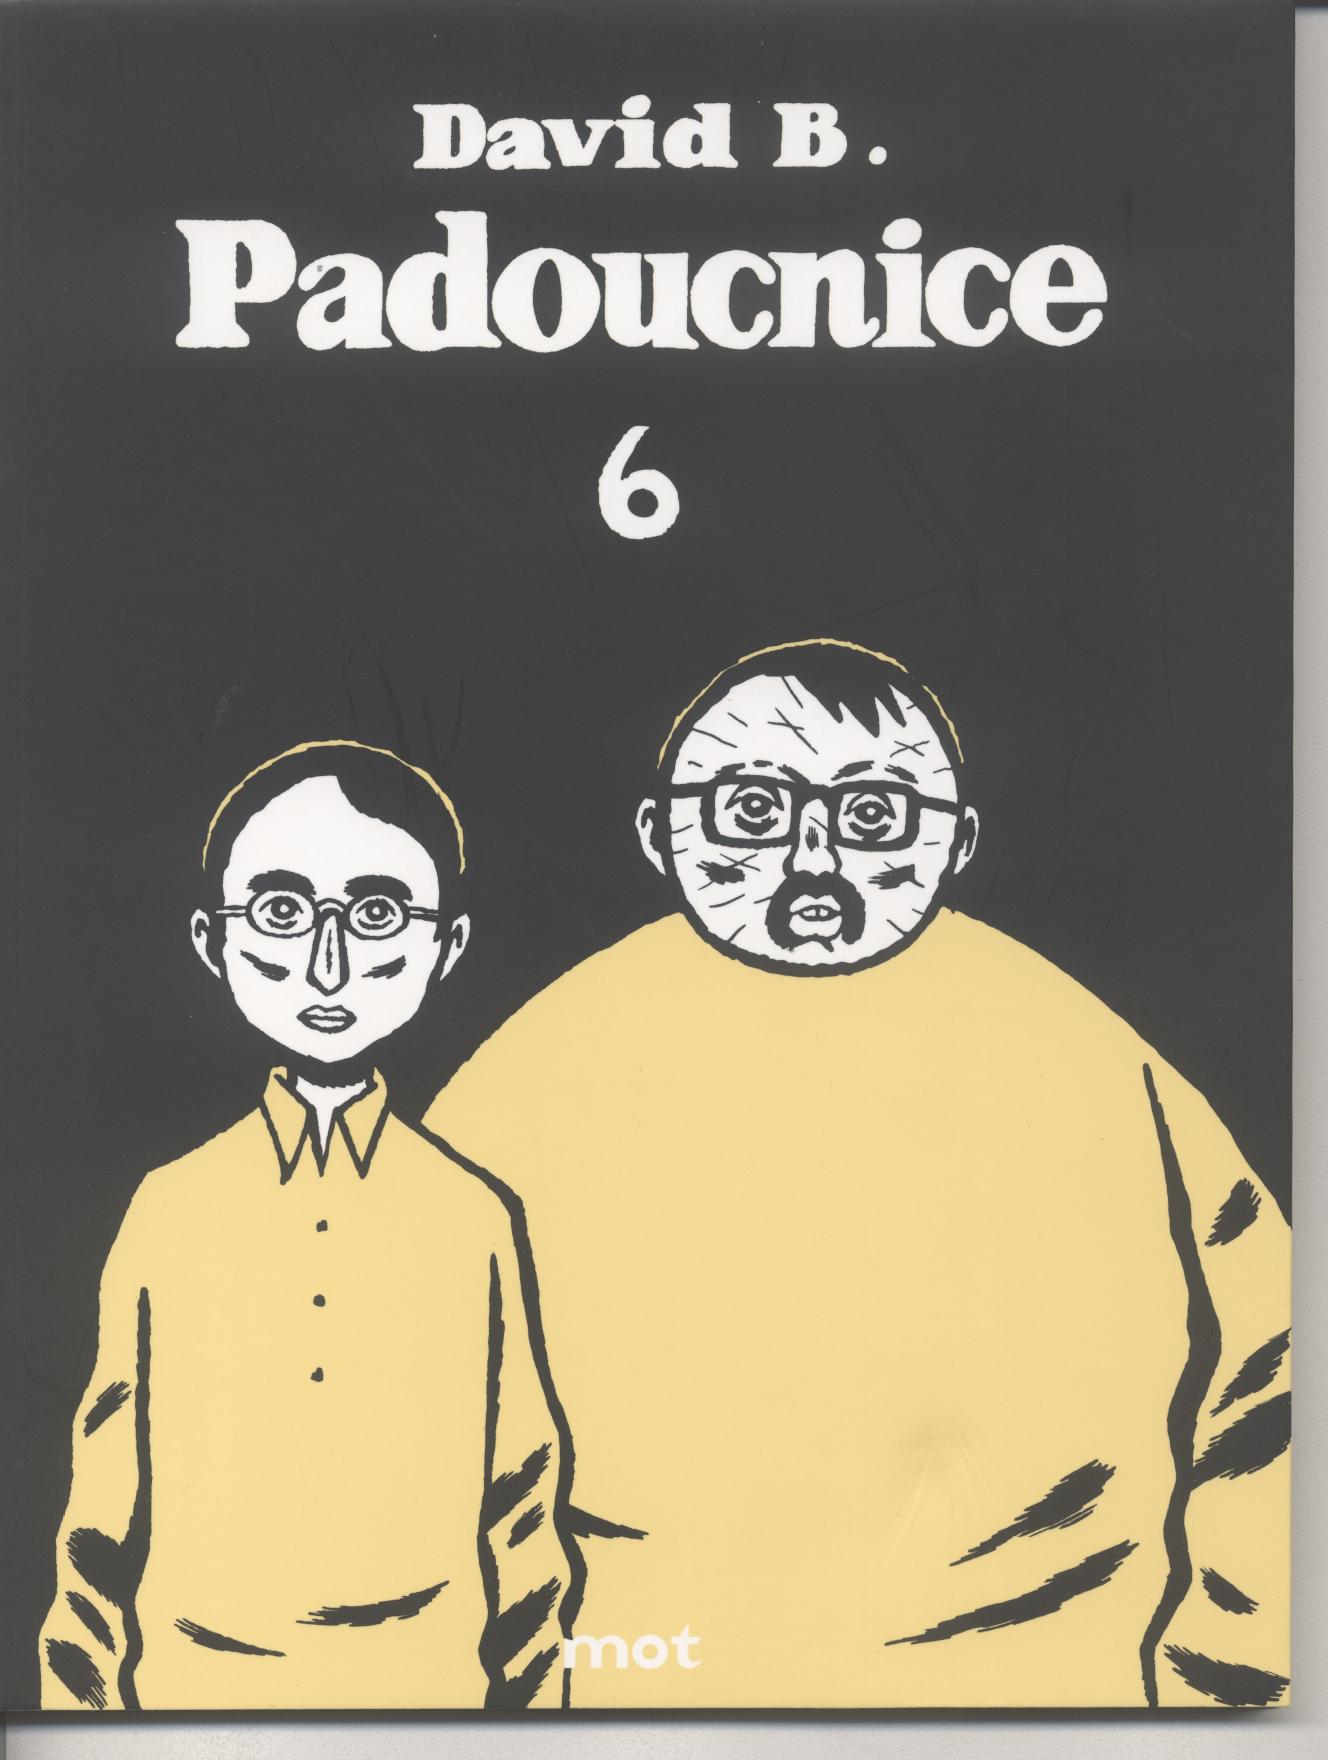 David B.: Padoucnice 6